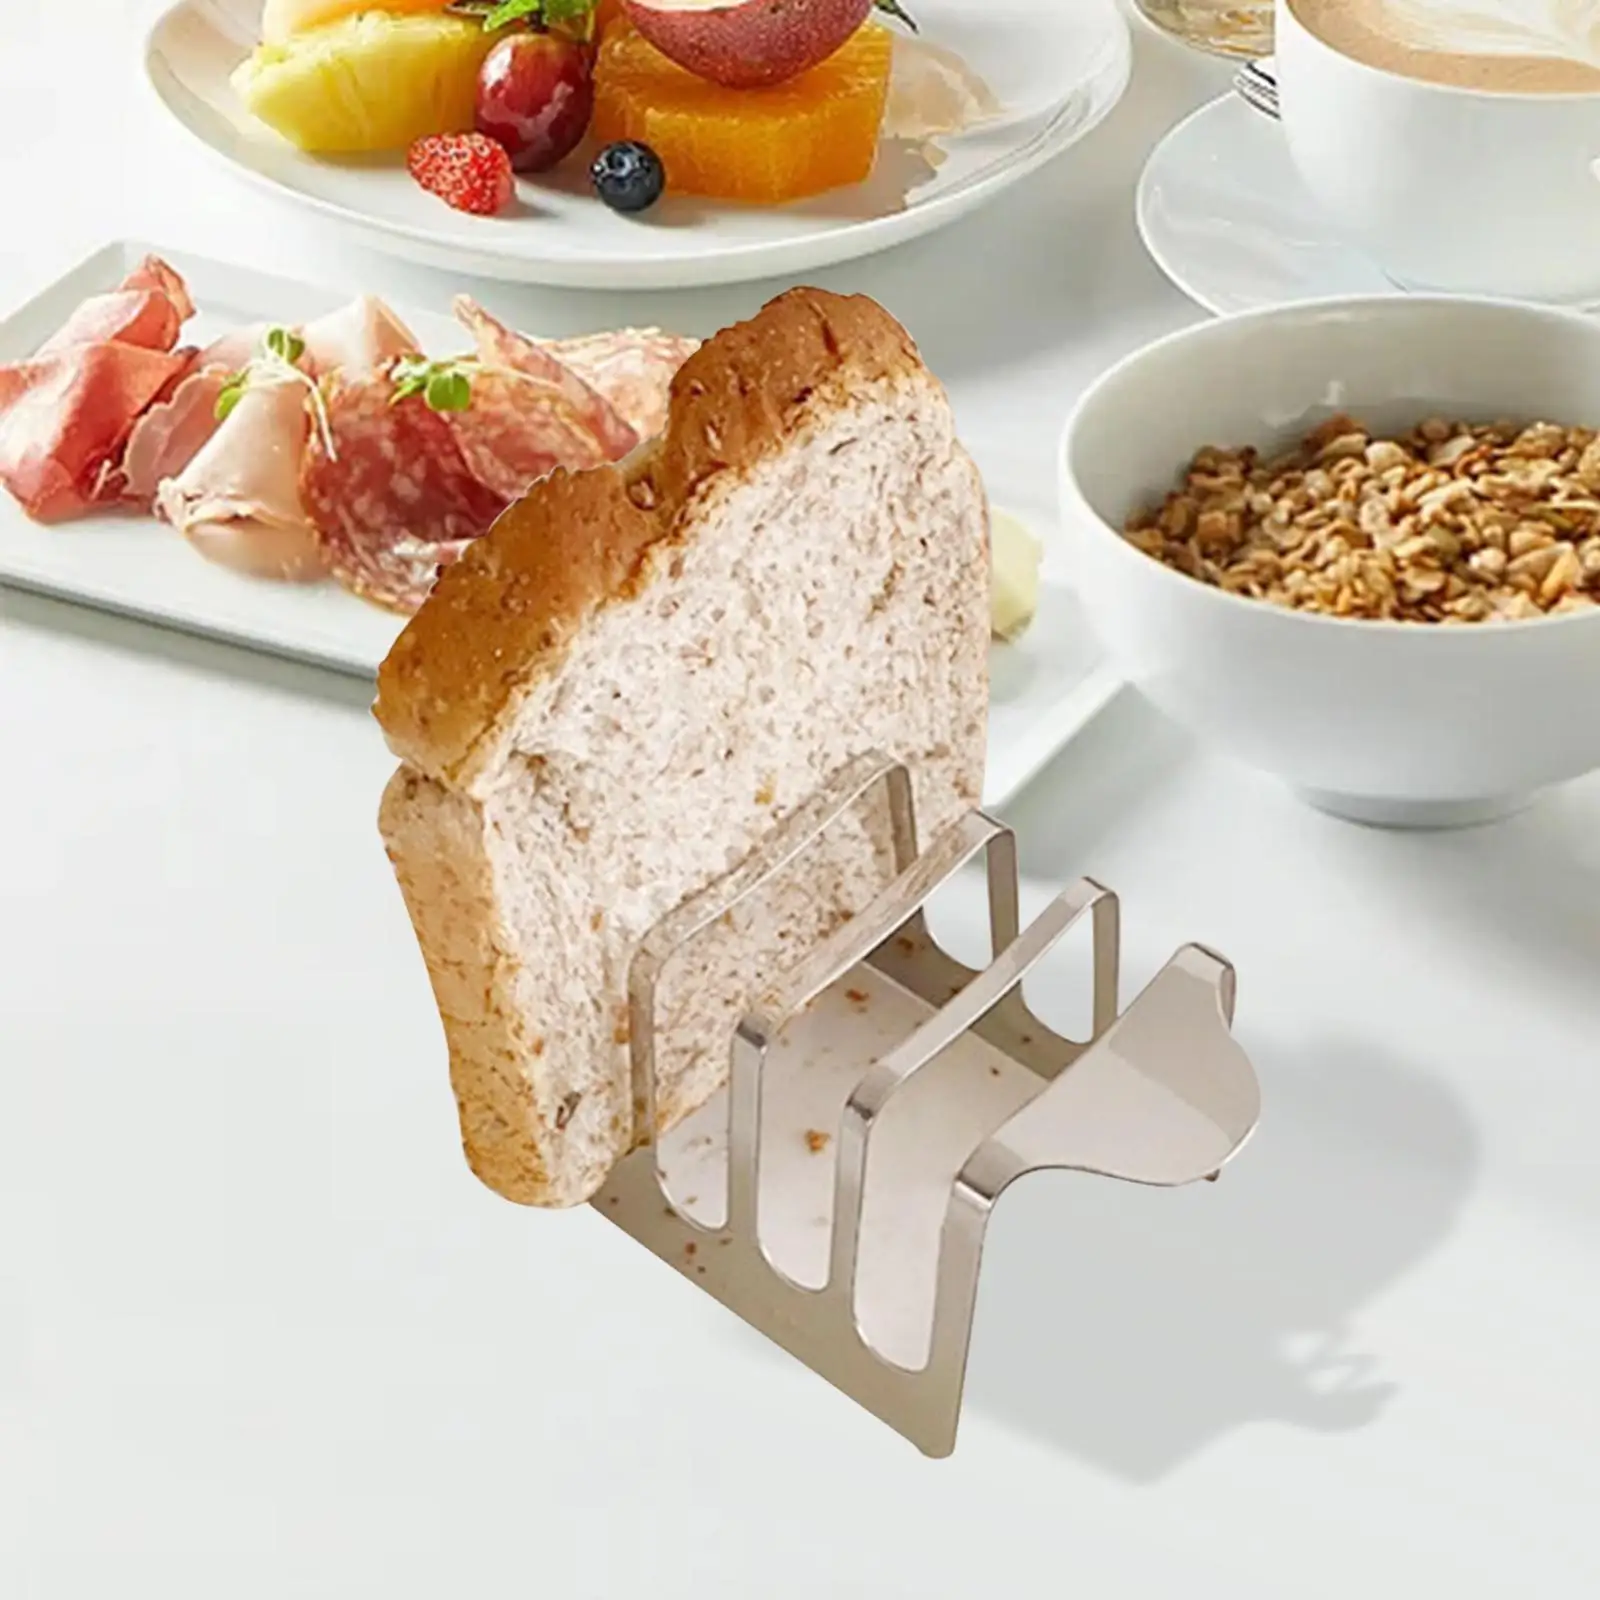 Toast Bread Rack Holder Utensil Household 4 Slice Slots Display Tool Organiser for Kitchen Hotel Pancake Restaurant Cooking